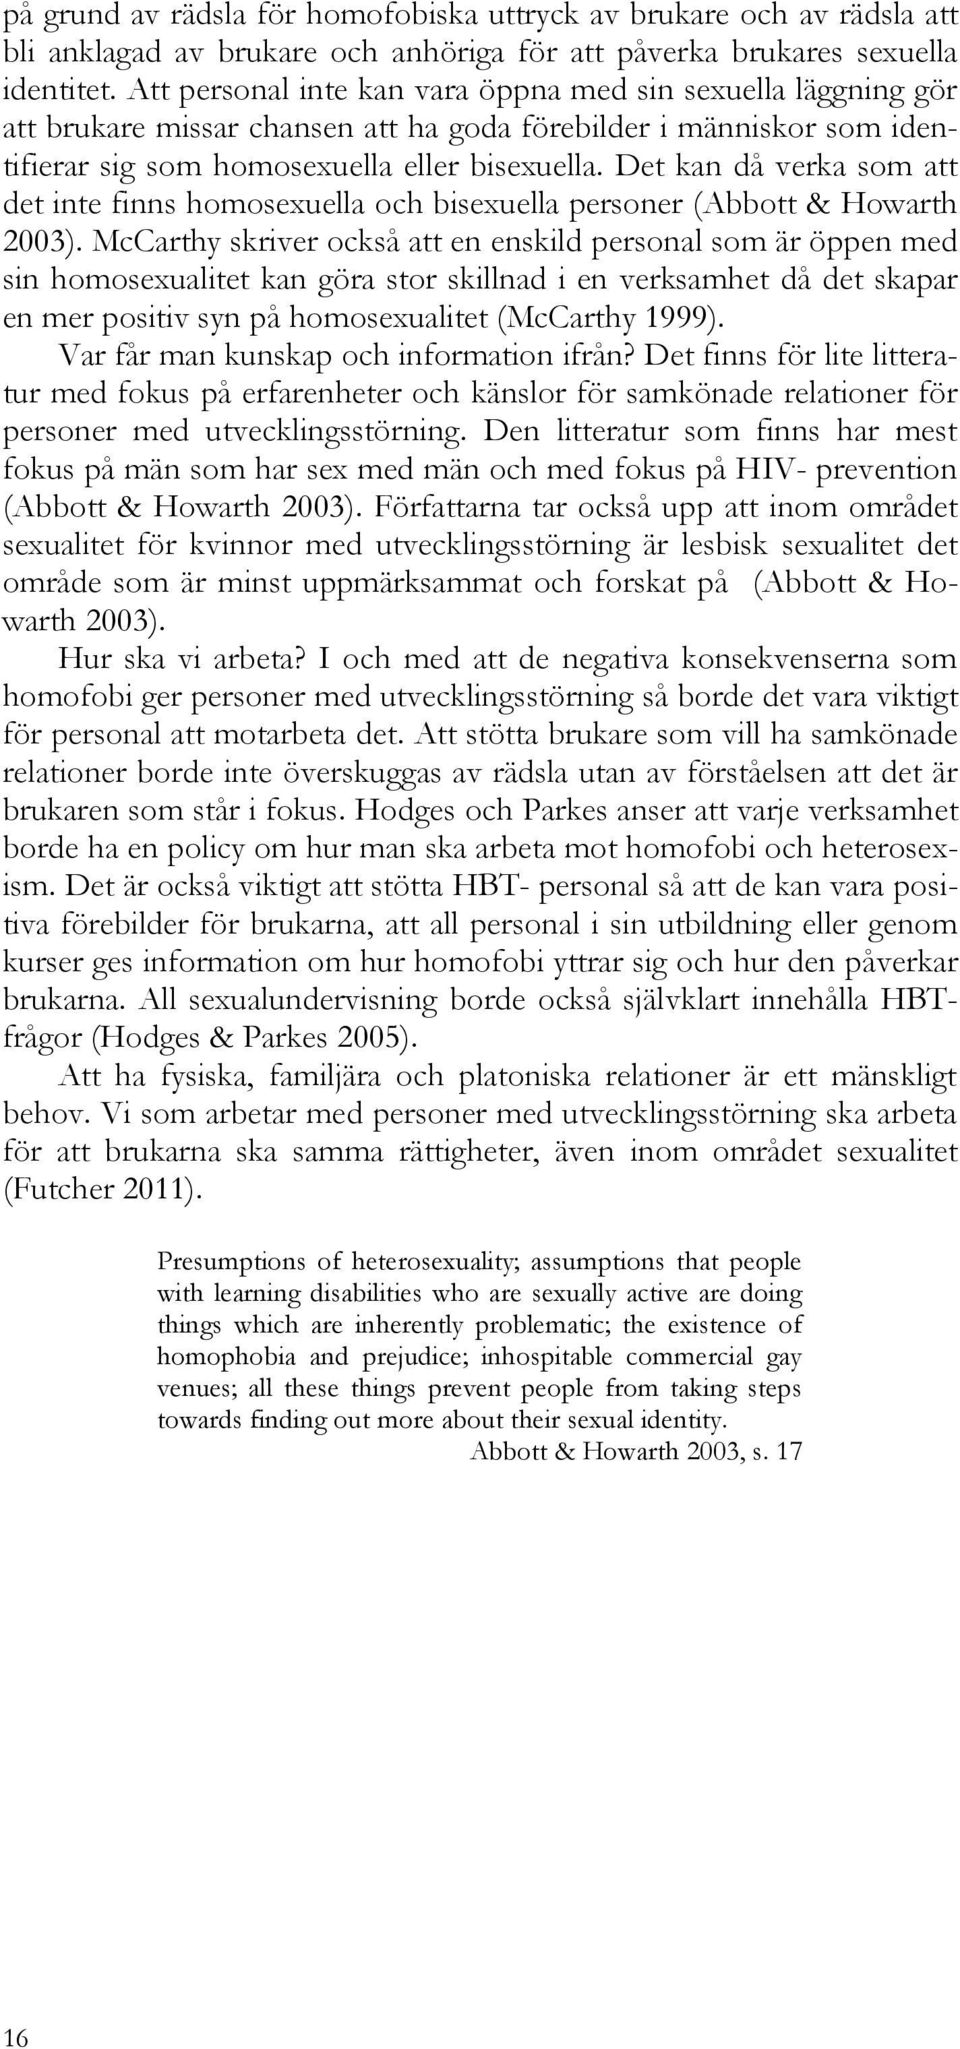 Det kan då verka som att det inte finns homosexuella och bisexuella personer (Abbott & Howarth 2003).